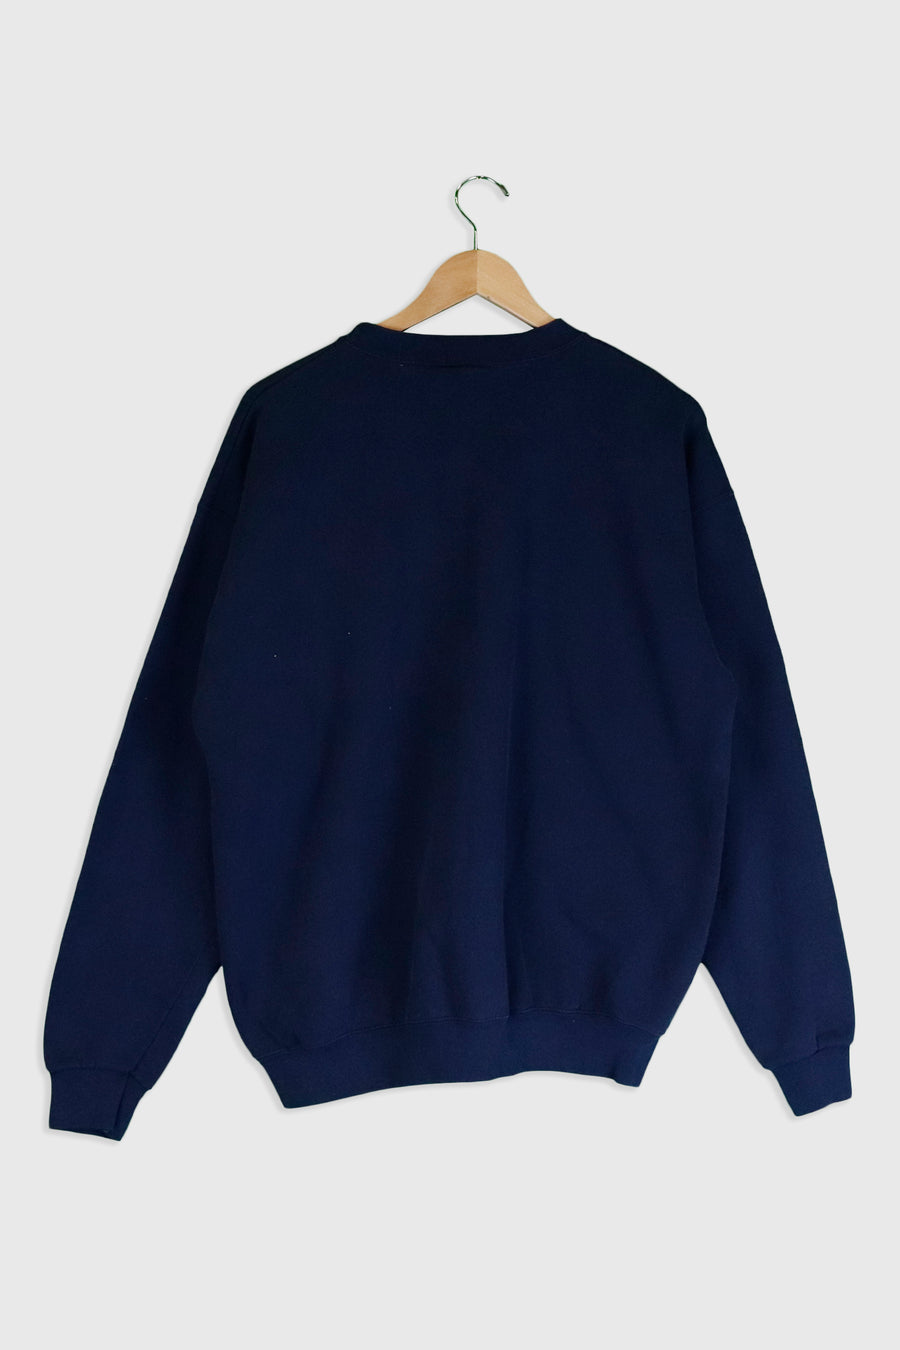 Vintage Ganisus Gollege Sweatshirt Sz XL